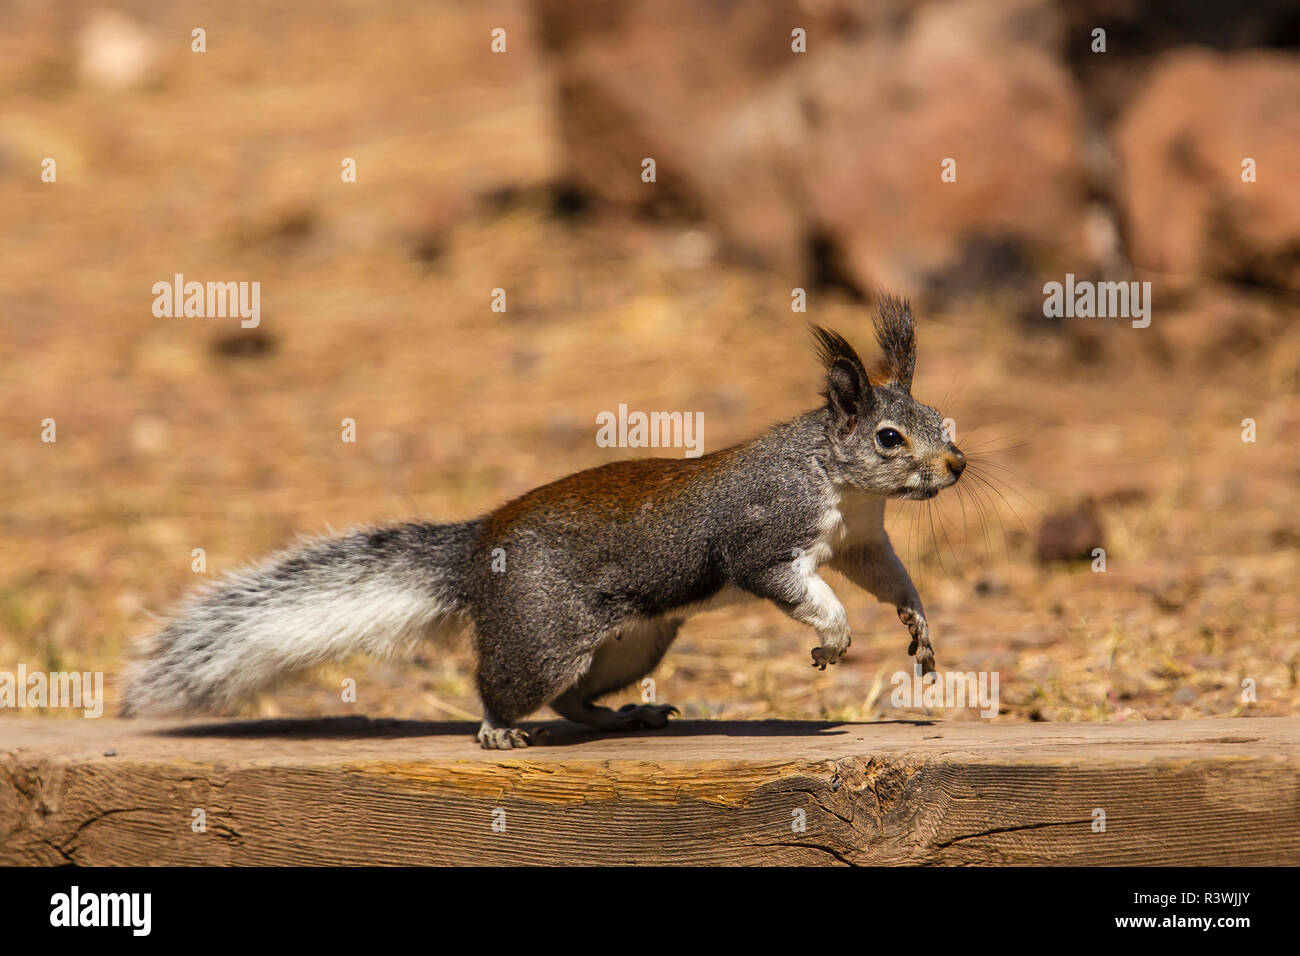 USA, Arizona, Williams. Kaibab Squirrel (aberti kaibabensis) Stock Photo